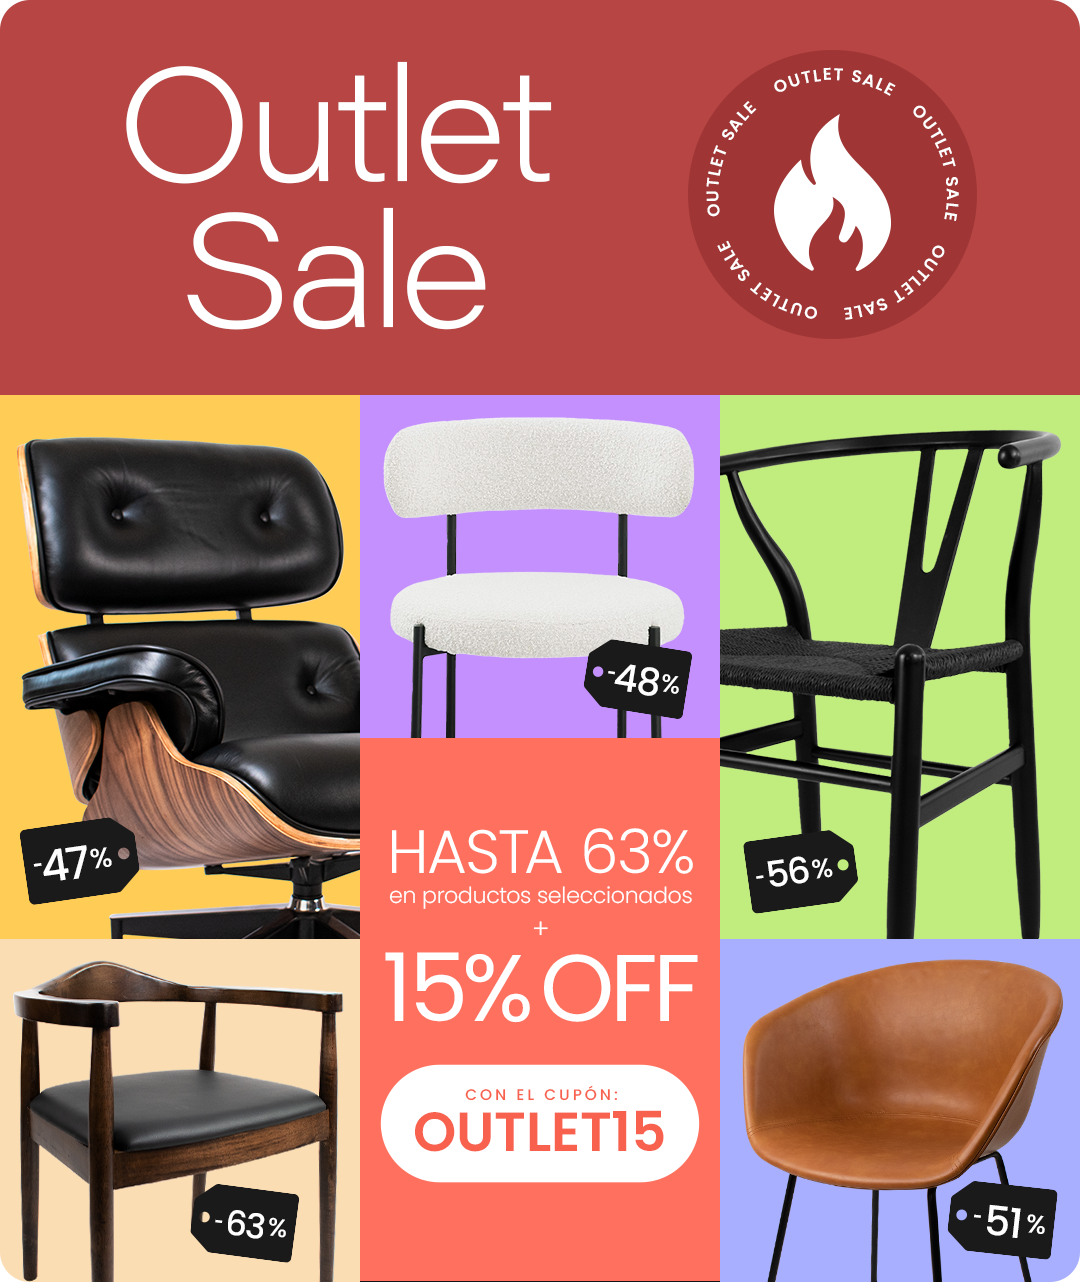 Outlet Sale - SPAACIO Design Central